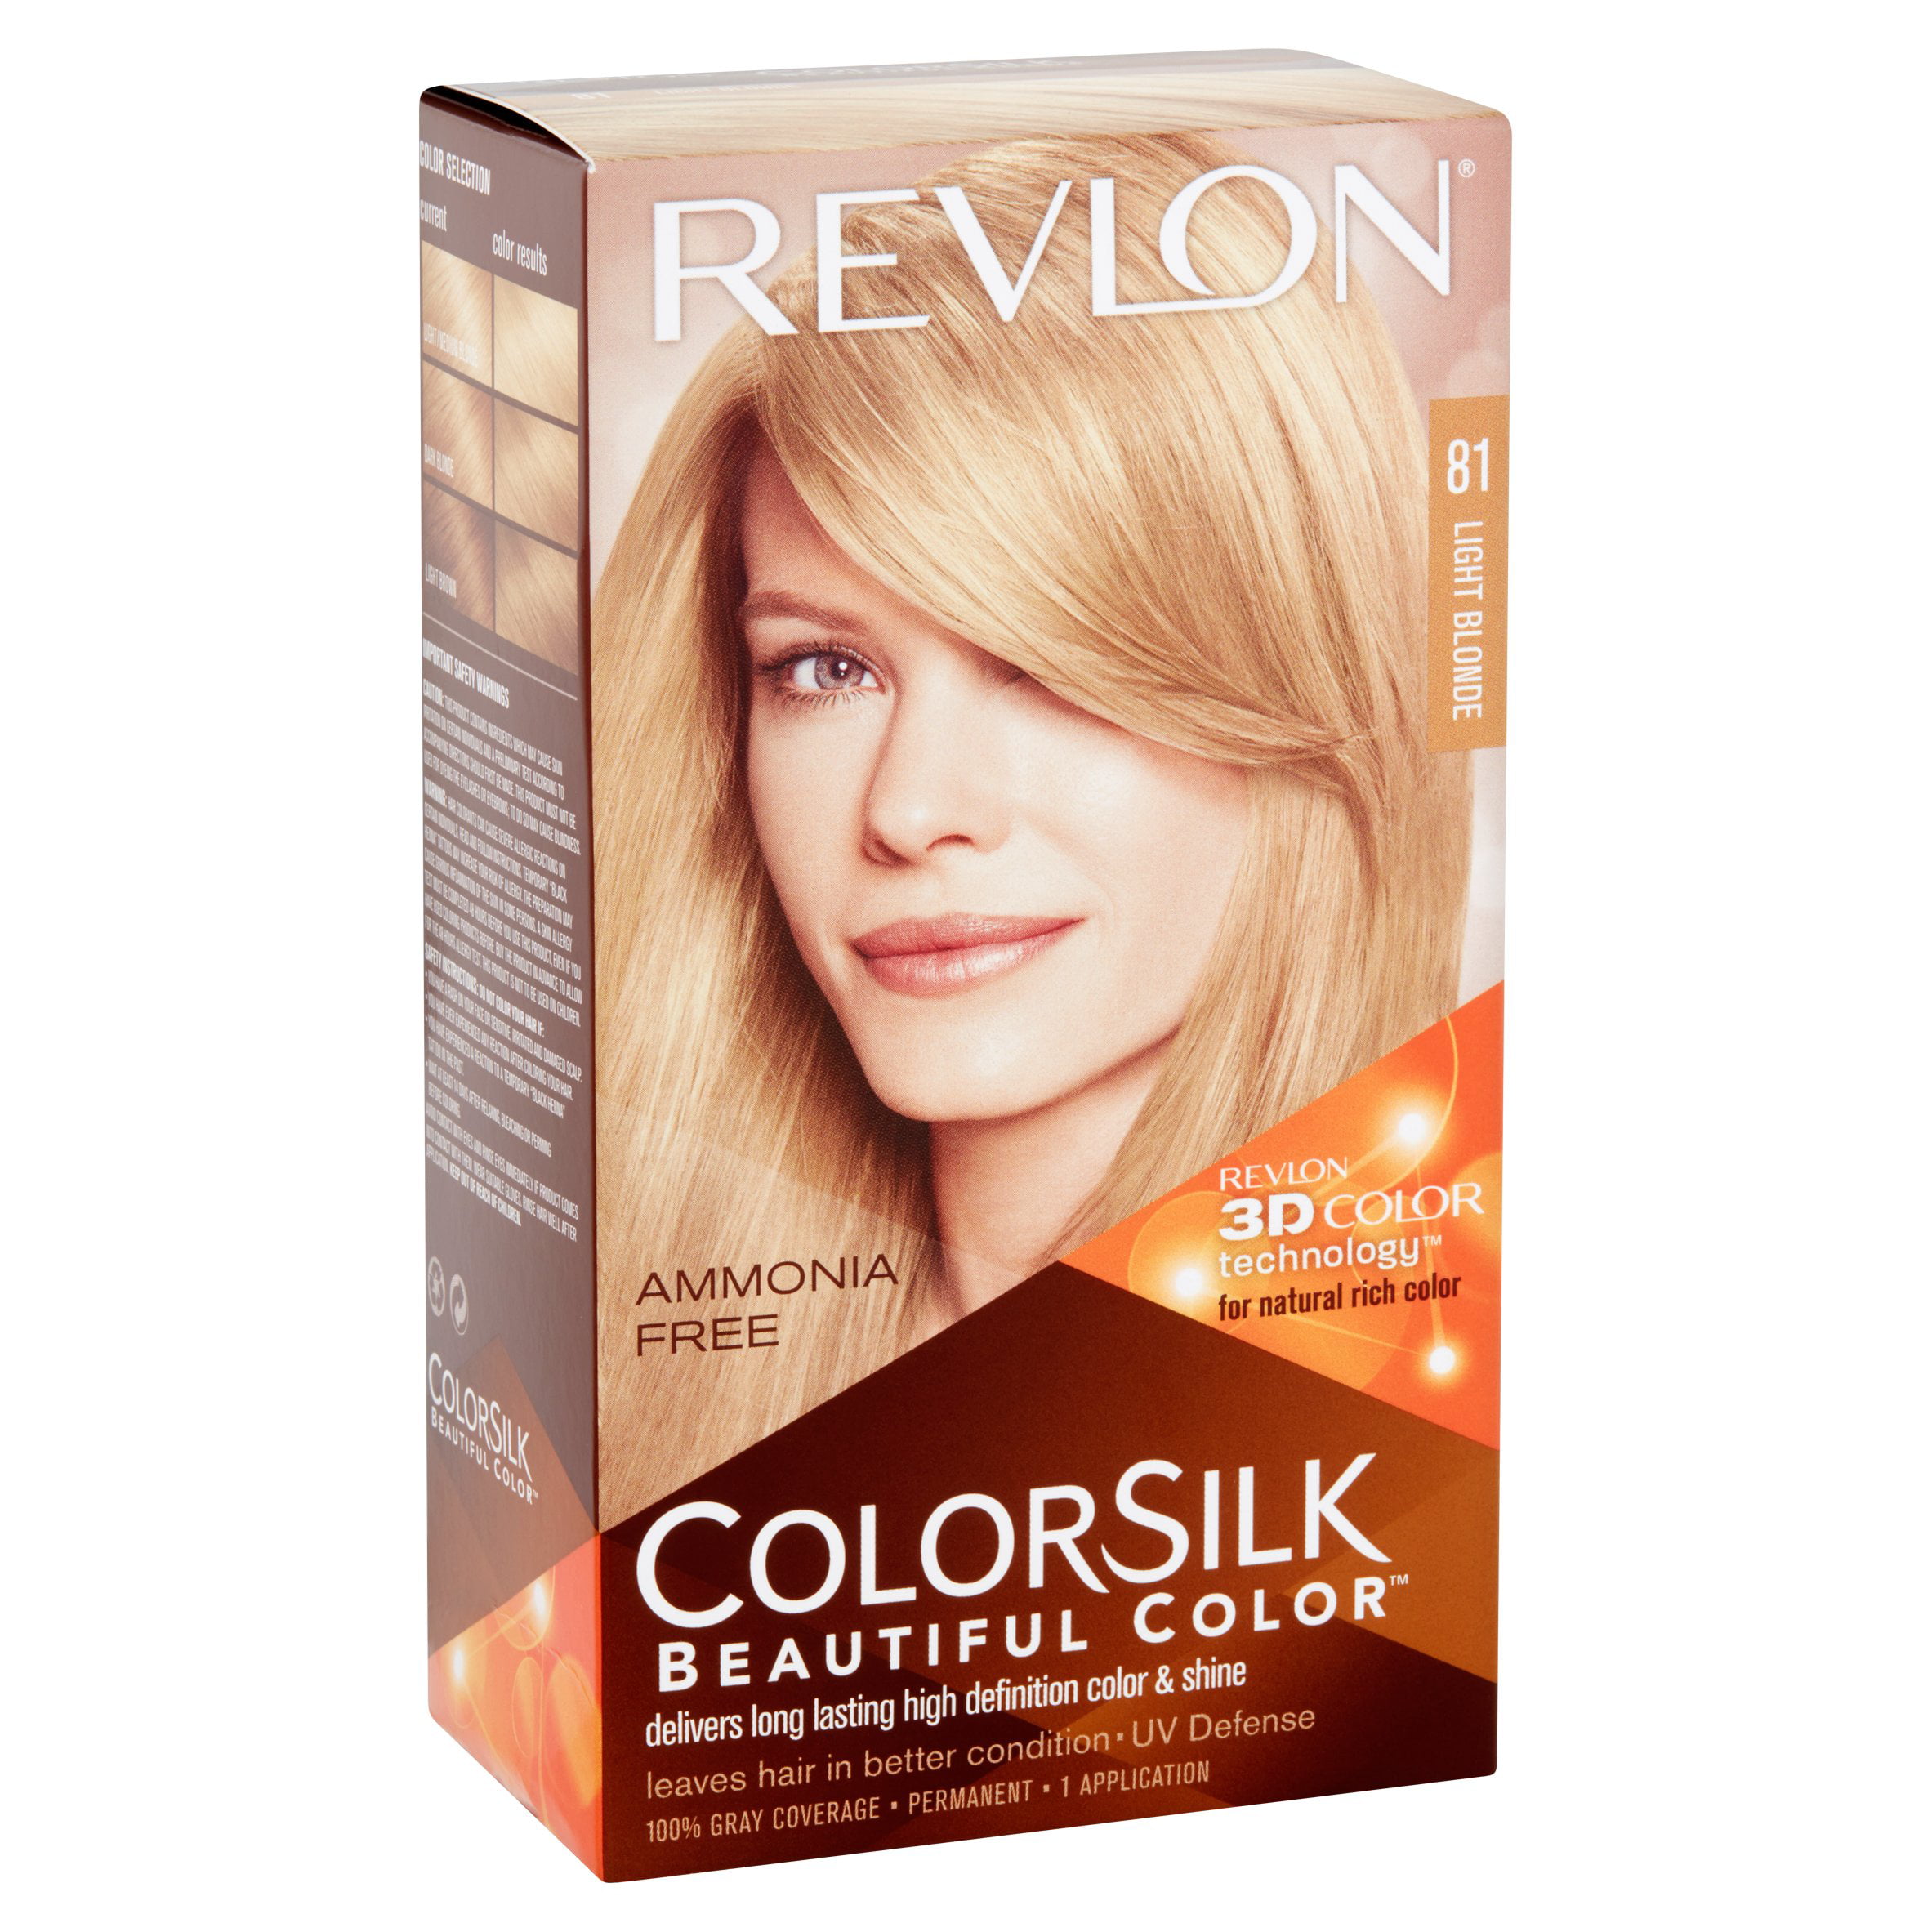 Revlon Colorsilk Beautiful Color Permanent Liquid Hair Color